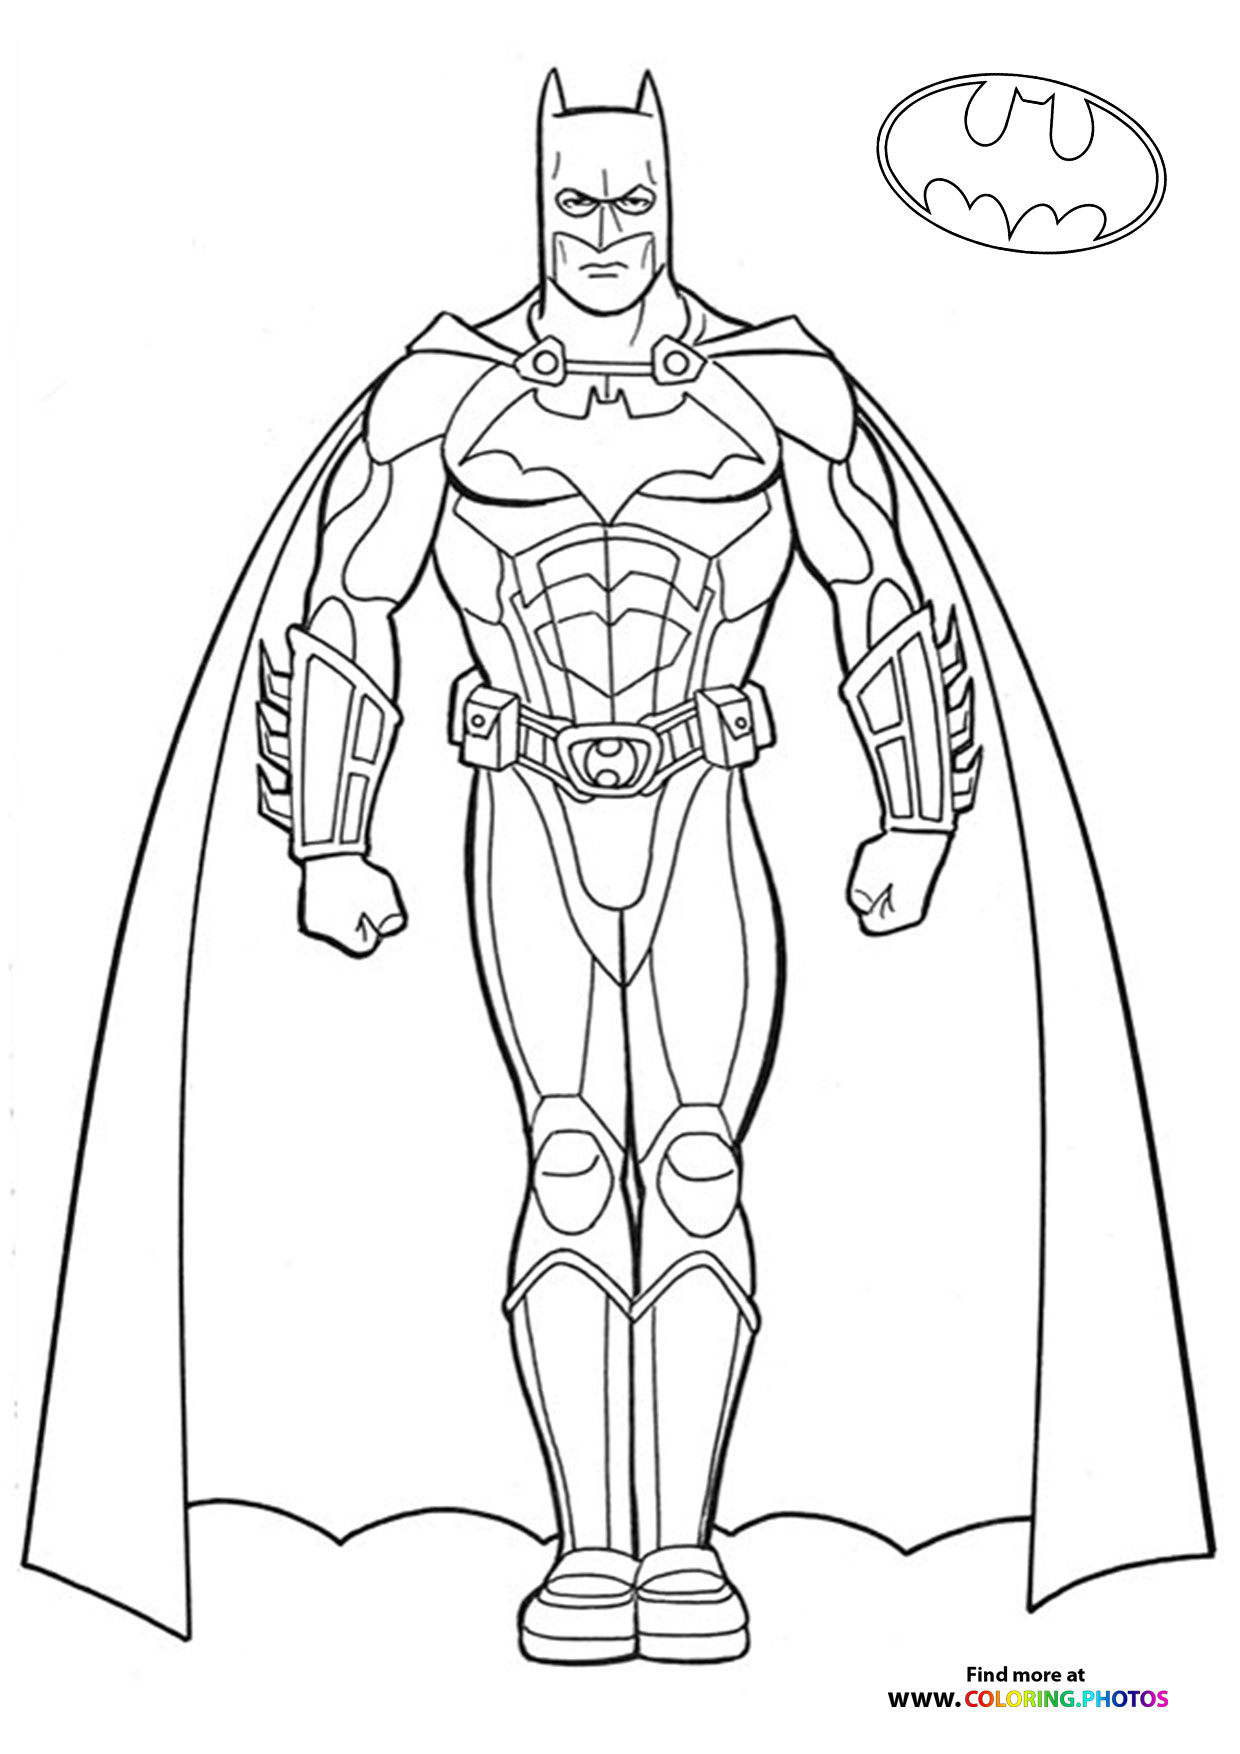 How to Draw BATMAN (The Batman 2022) Drawing Tutorial - Draw it, Too!